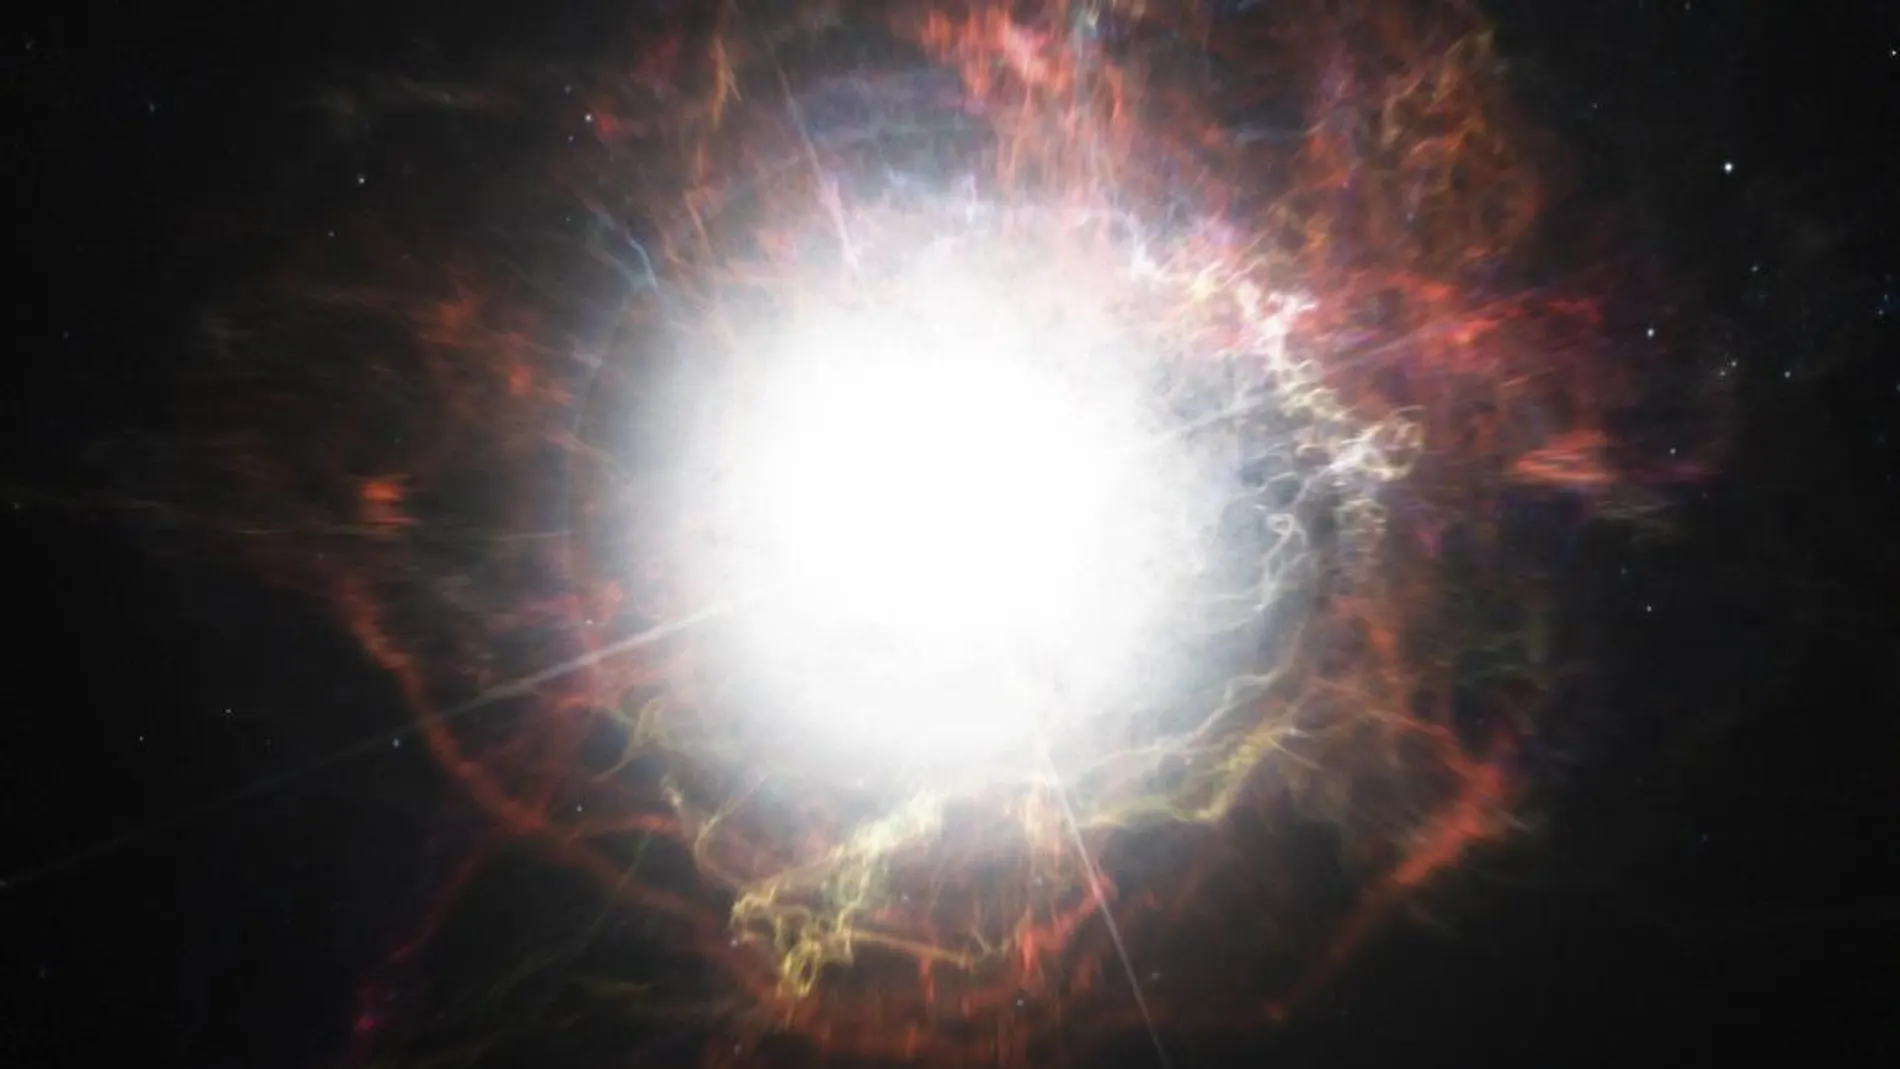 Imagen facilitada por el del Observatorio Europeo Austral (ESO) de una impresión artística que muestra la formación de polvo en el medio que rodea la explosión de una supernova